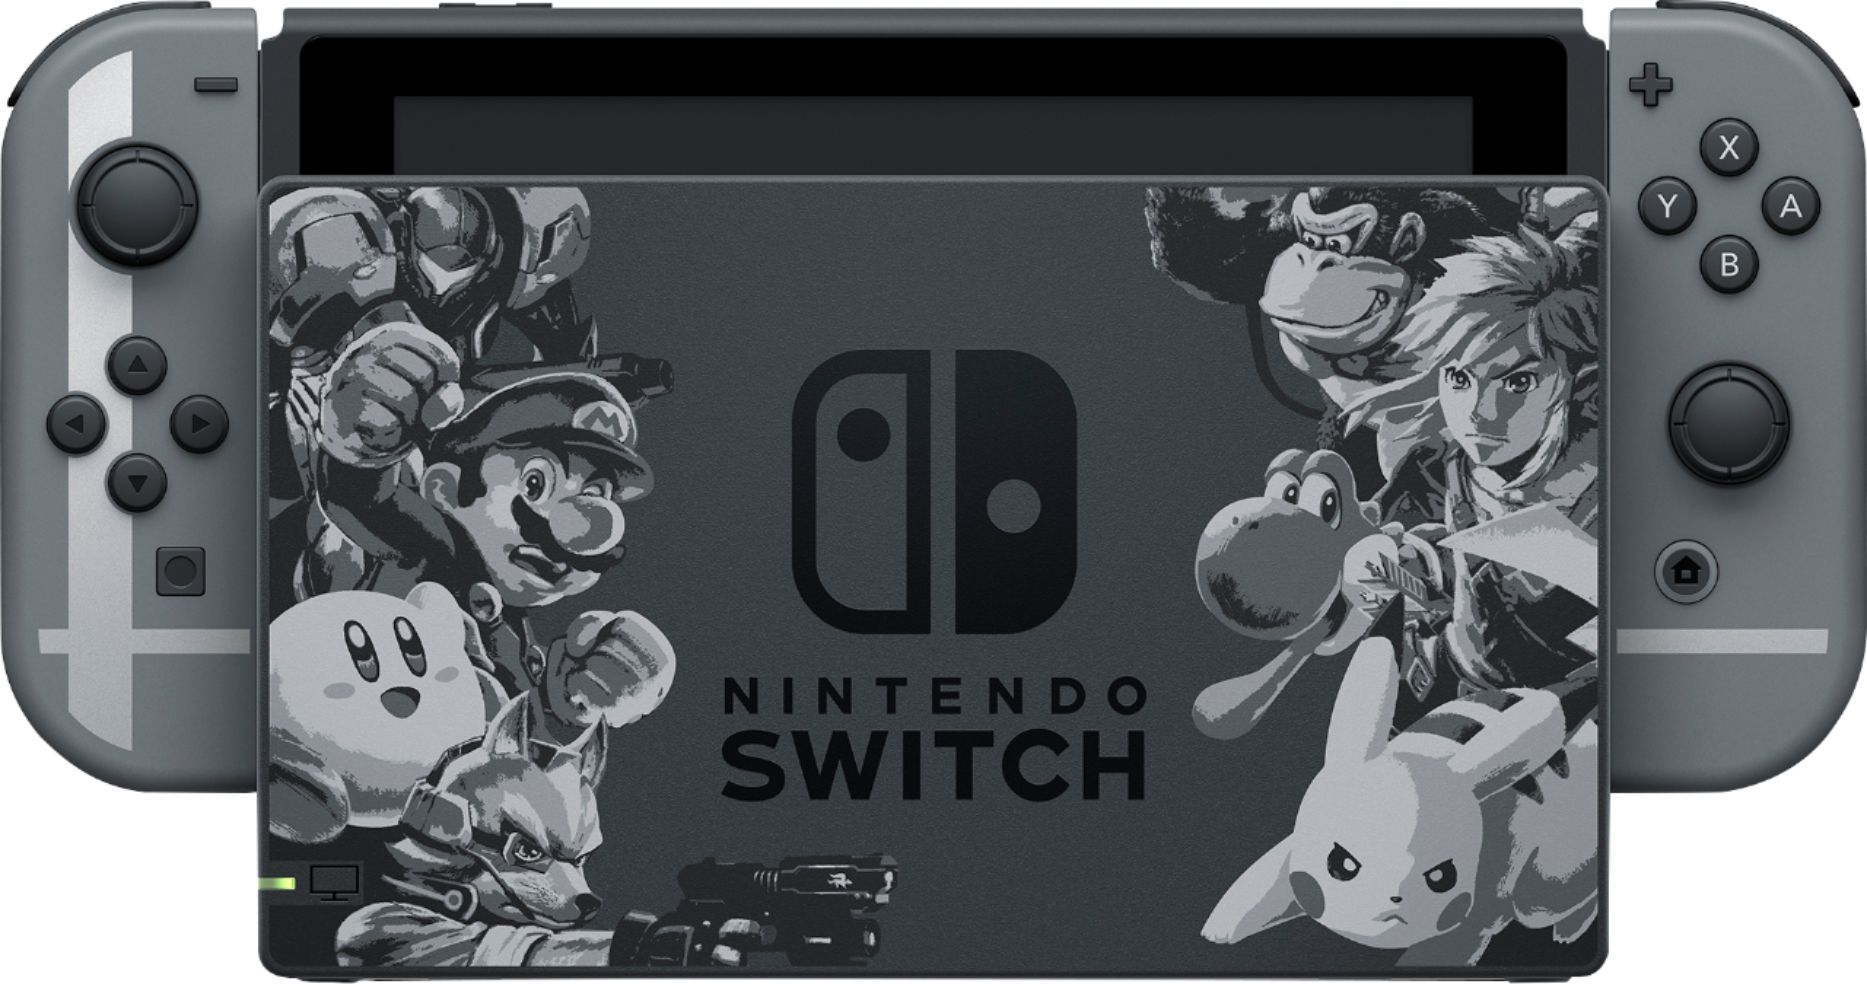 ler Tak for din hjælp fest Best Buy: Nintendo Switch Super Smash Bros. Ultimate Edition 12345